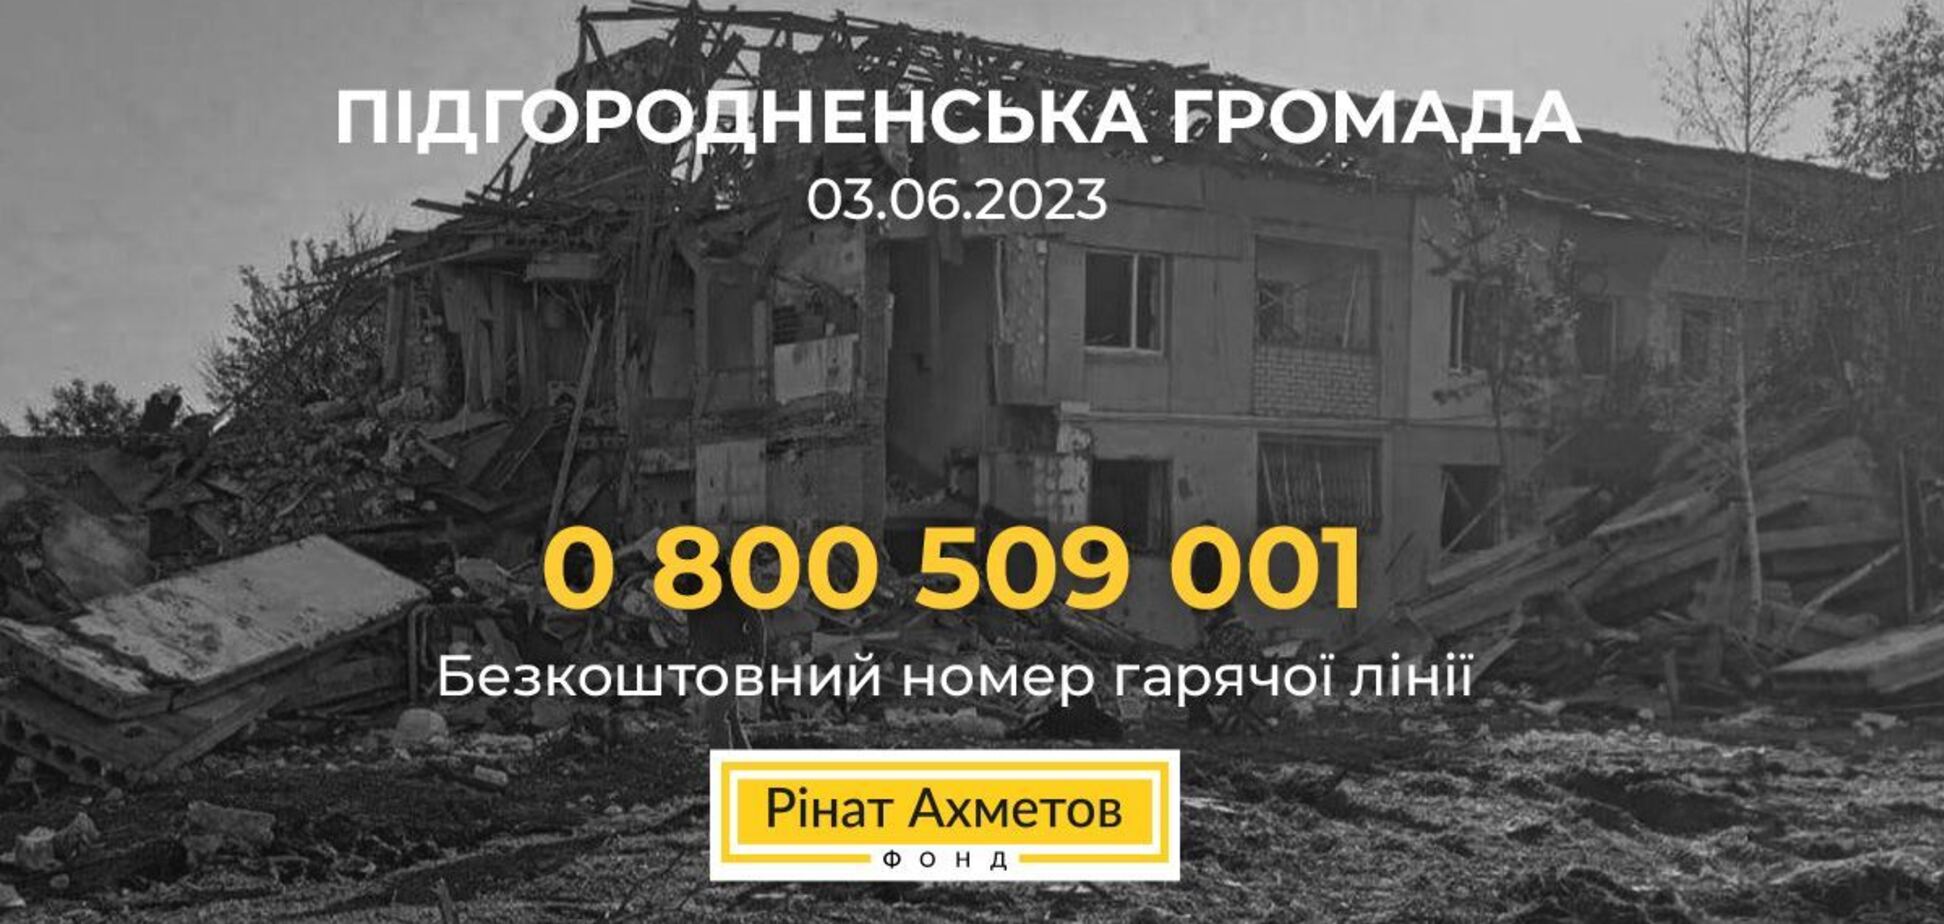 Фонд Рината Ахметова объявил о готовности помочь пострадавшим от ракетного удара в пригороде Днепра